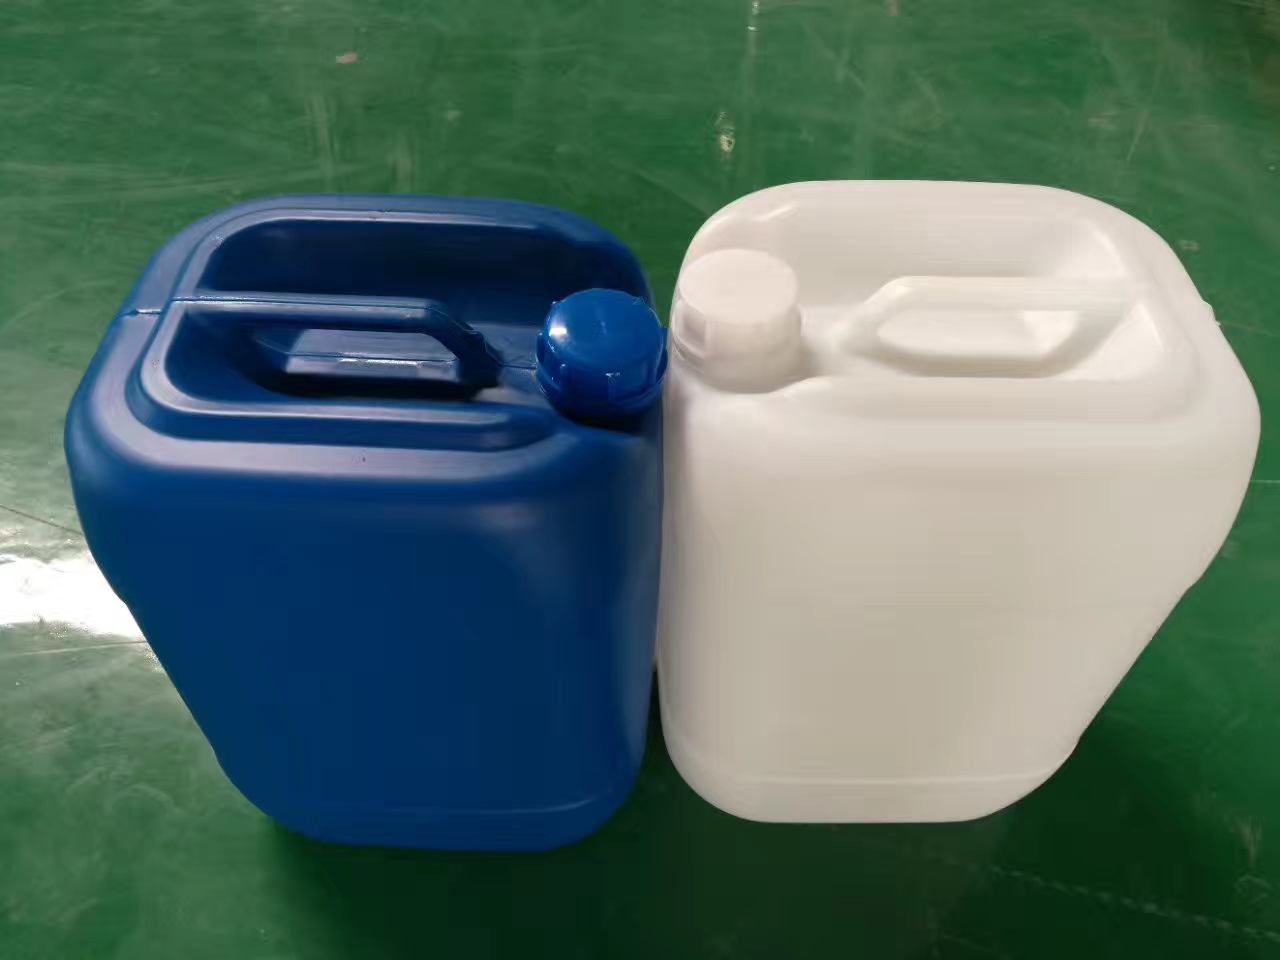 25升塑料桶 25升塑料桶专业生产厂家 德州春源塑料桶塑料罐生产厂家 食品级化工农药医药塑料桶生产 德州塑料桶生产厂家